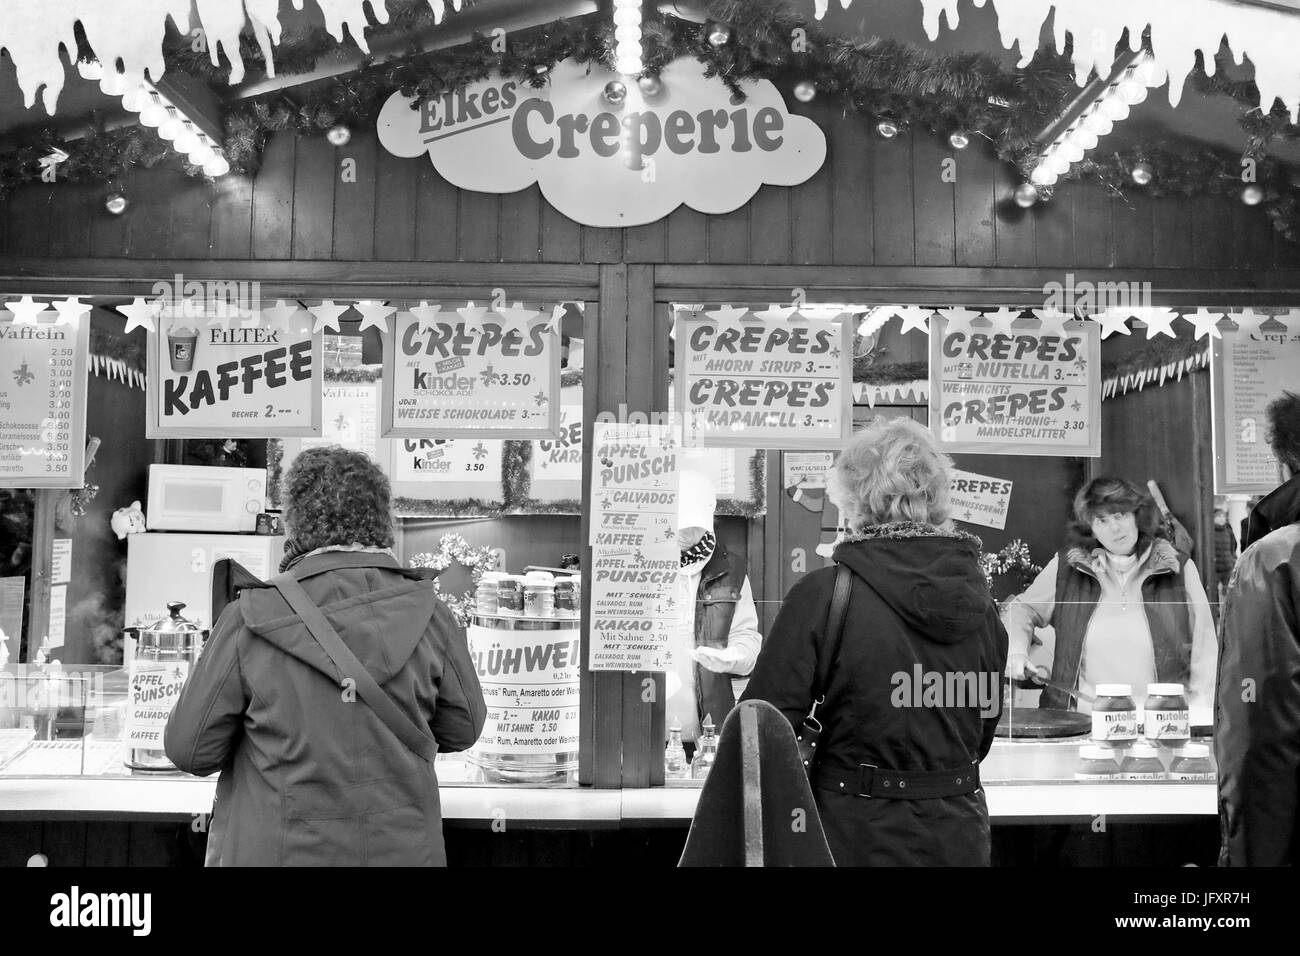 Les clients de l'Elks Crêperie d'attendre d'être servi au cours de l'assemblée annuelle du marché de Noël en plein air à Berlin, Allemagne Banque D'Images